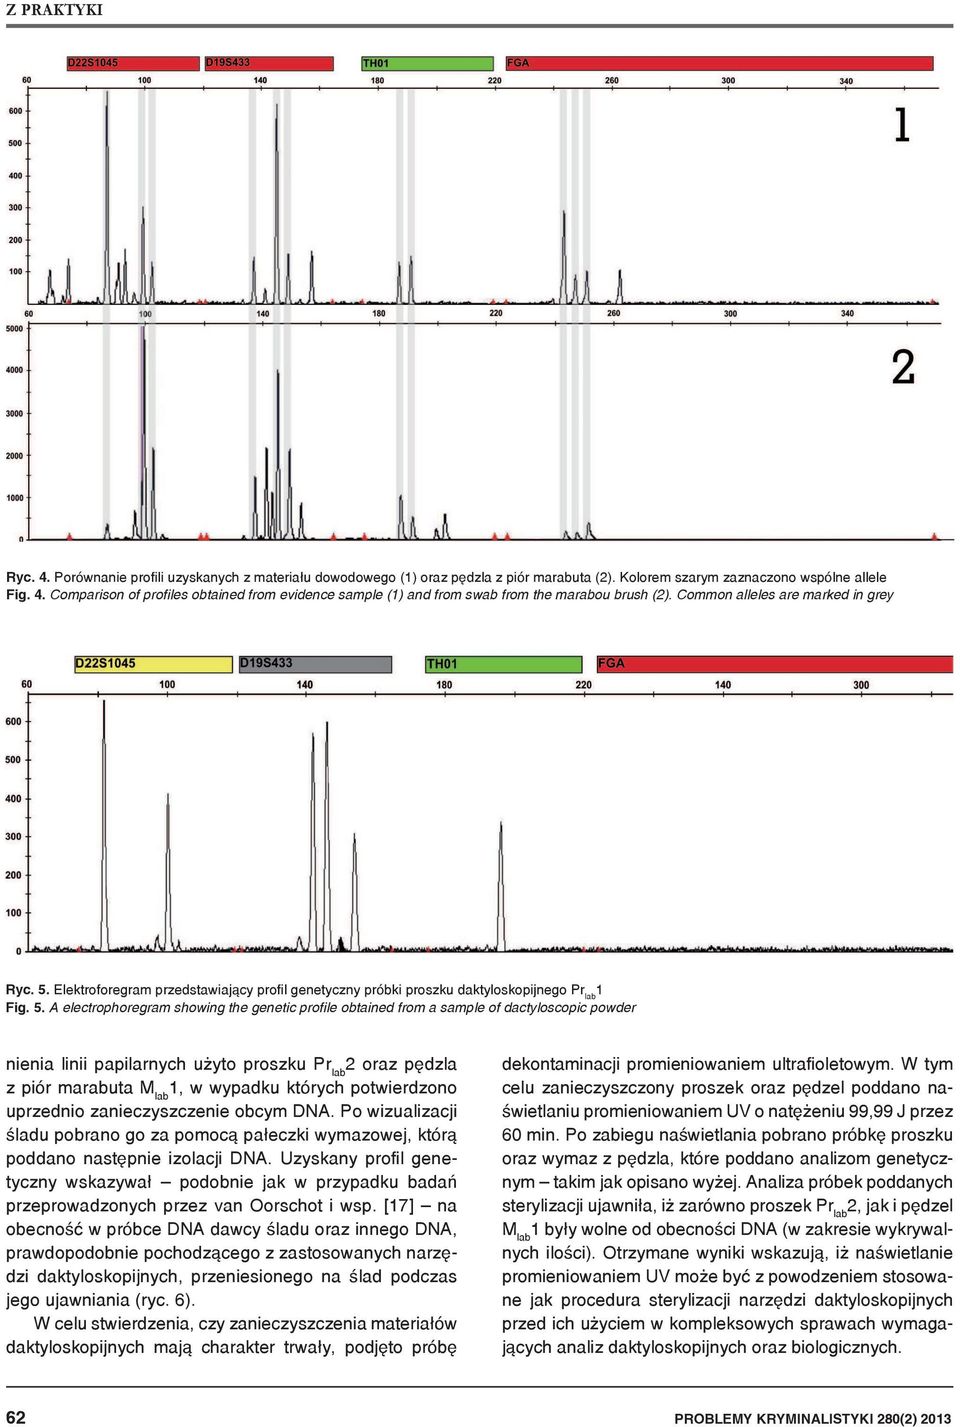 Elektroforegram przedstawiający profil genetyczny próbki proszku daktyloskopijnego Pr lab Fig. 5.